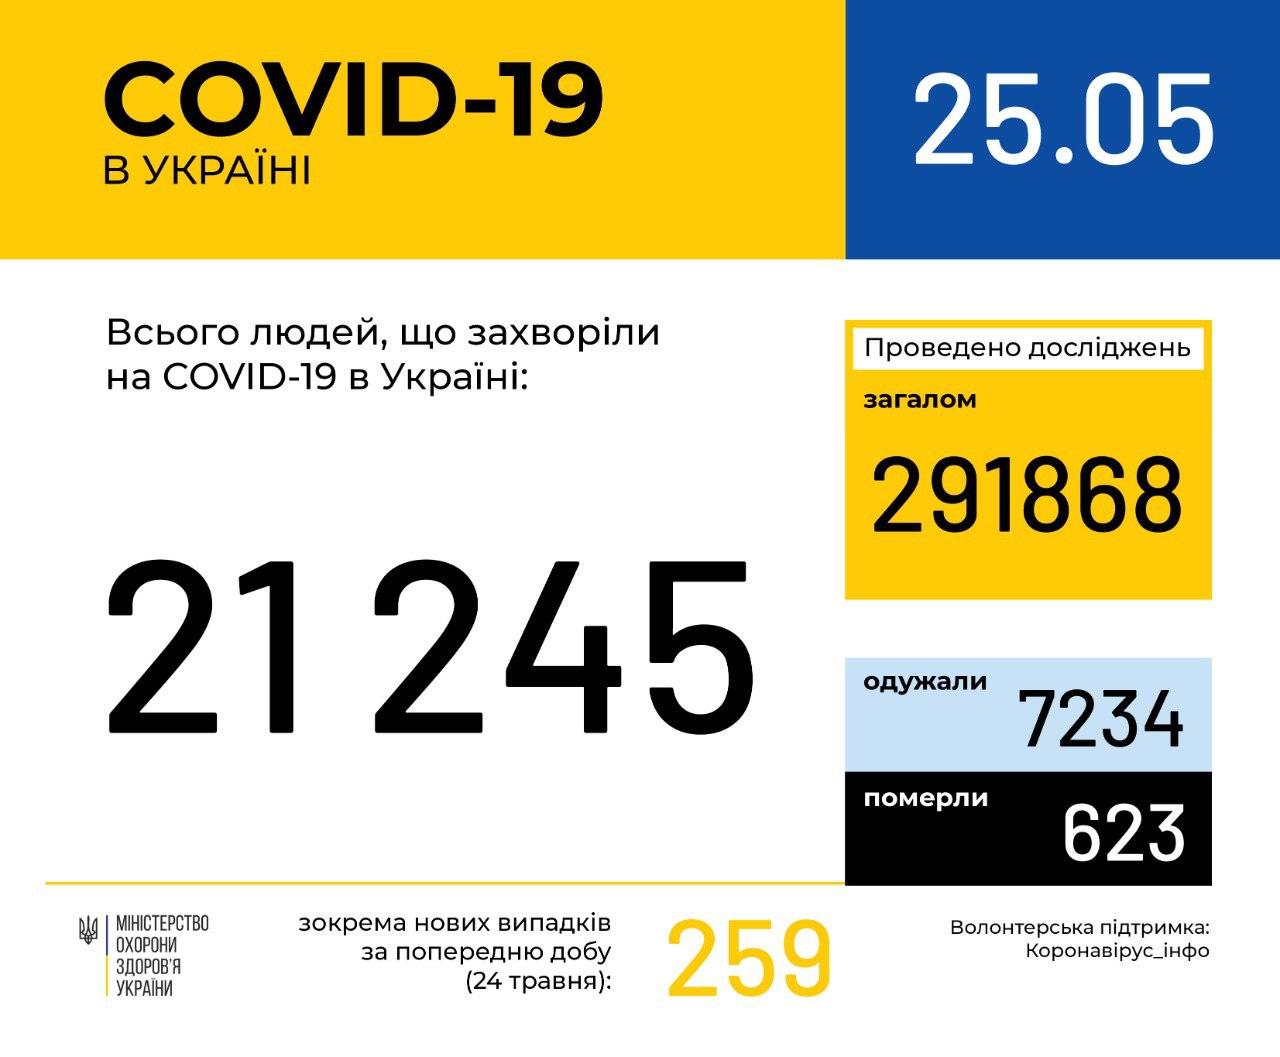 Количество заразившихся COVID-19 в Украине превысило 21 тысячу человек